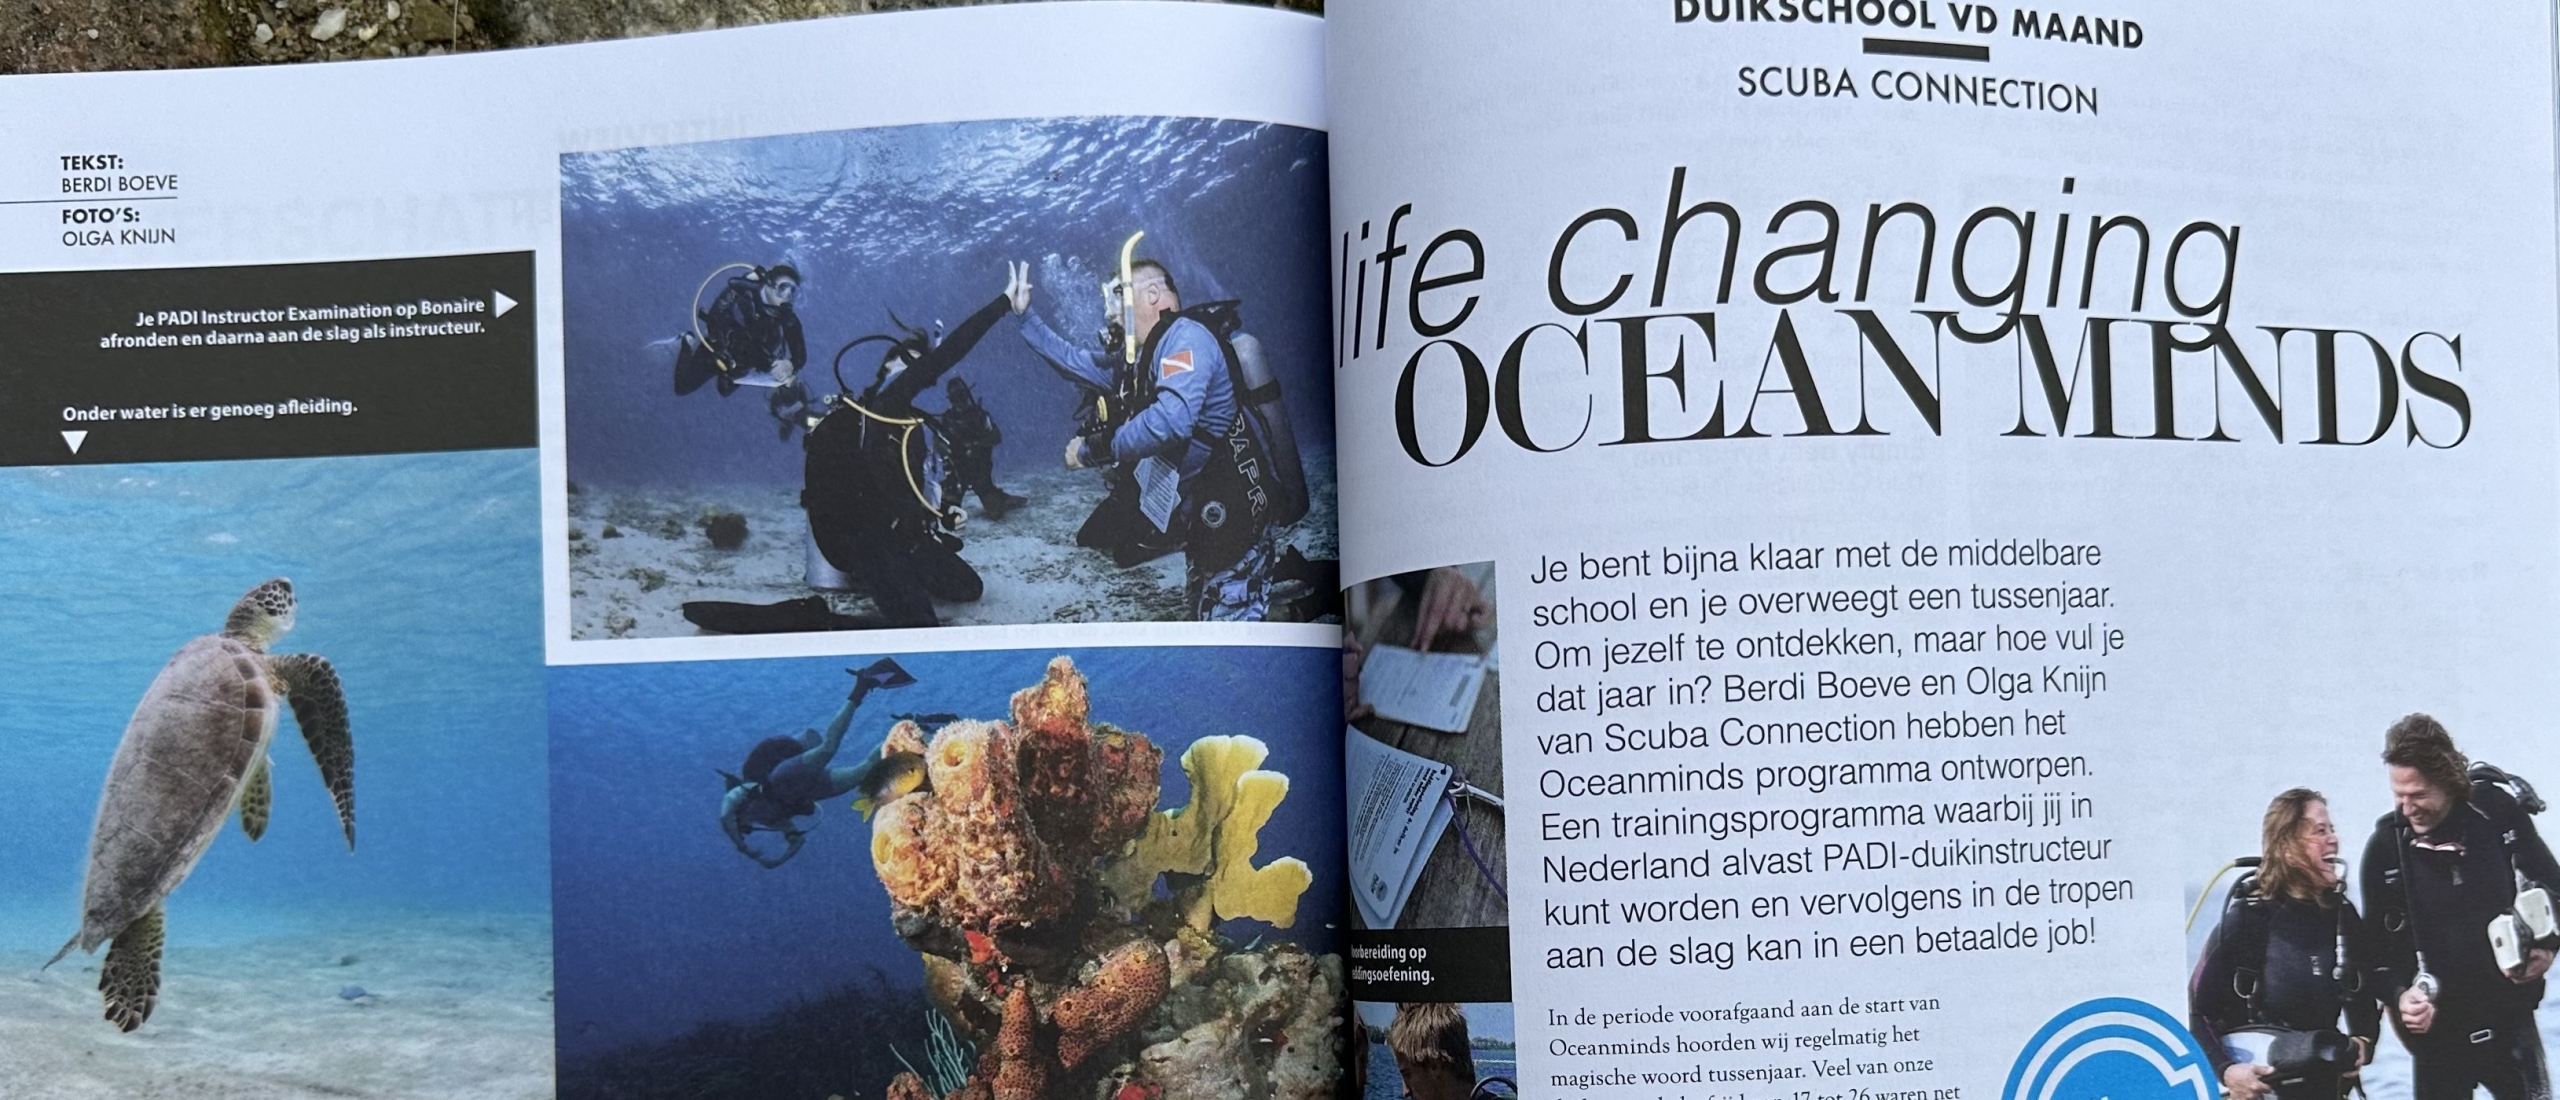 René magazine, Wij staan erin met Oceanminds!